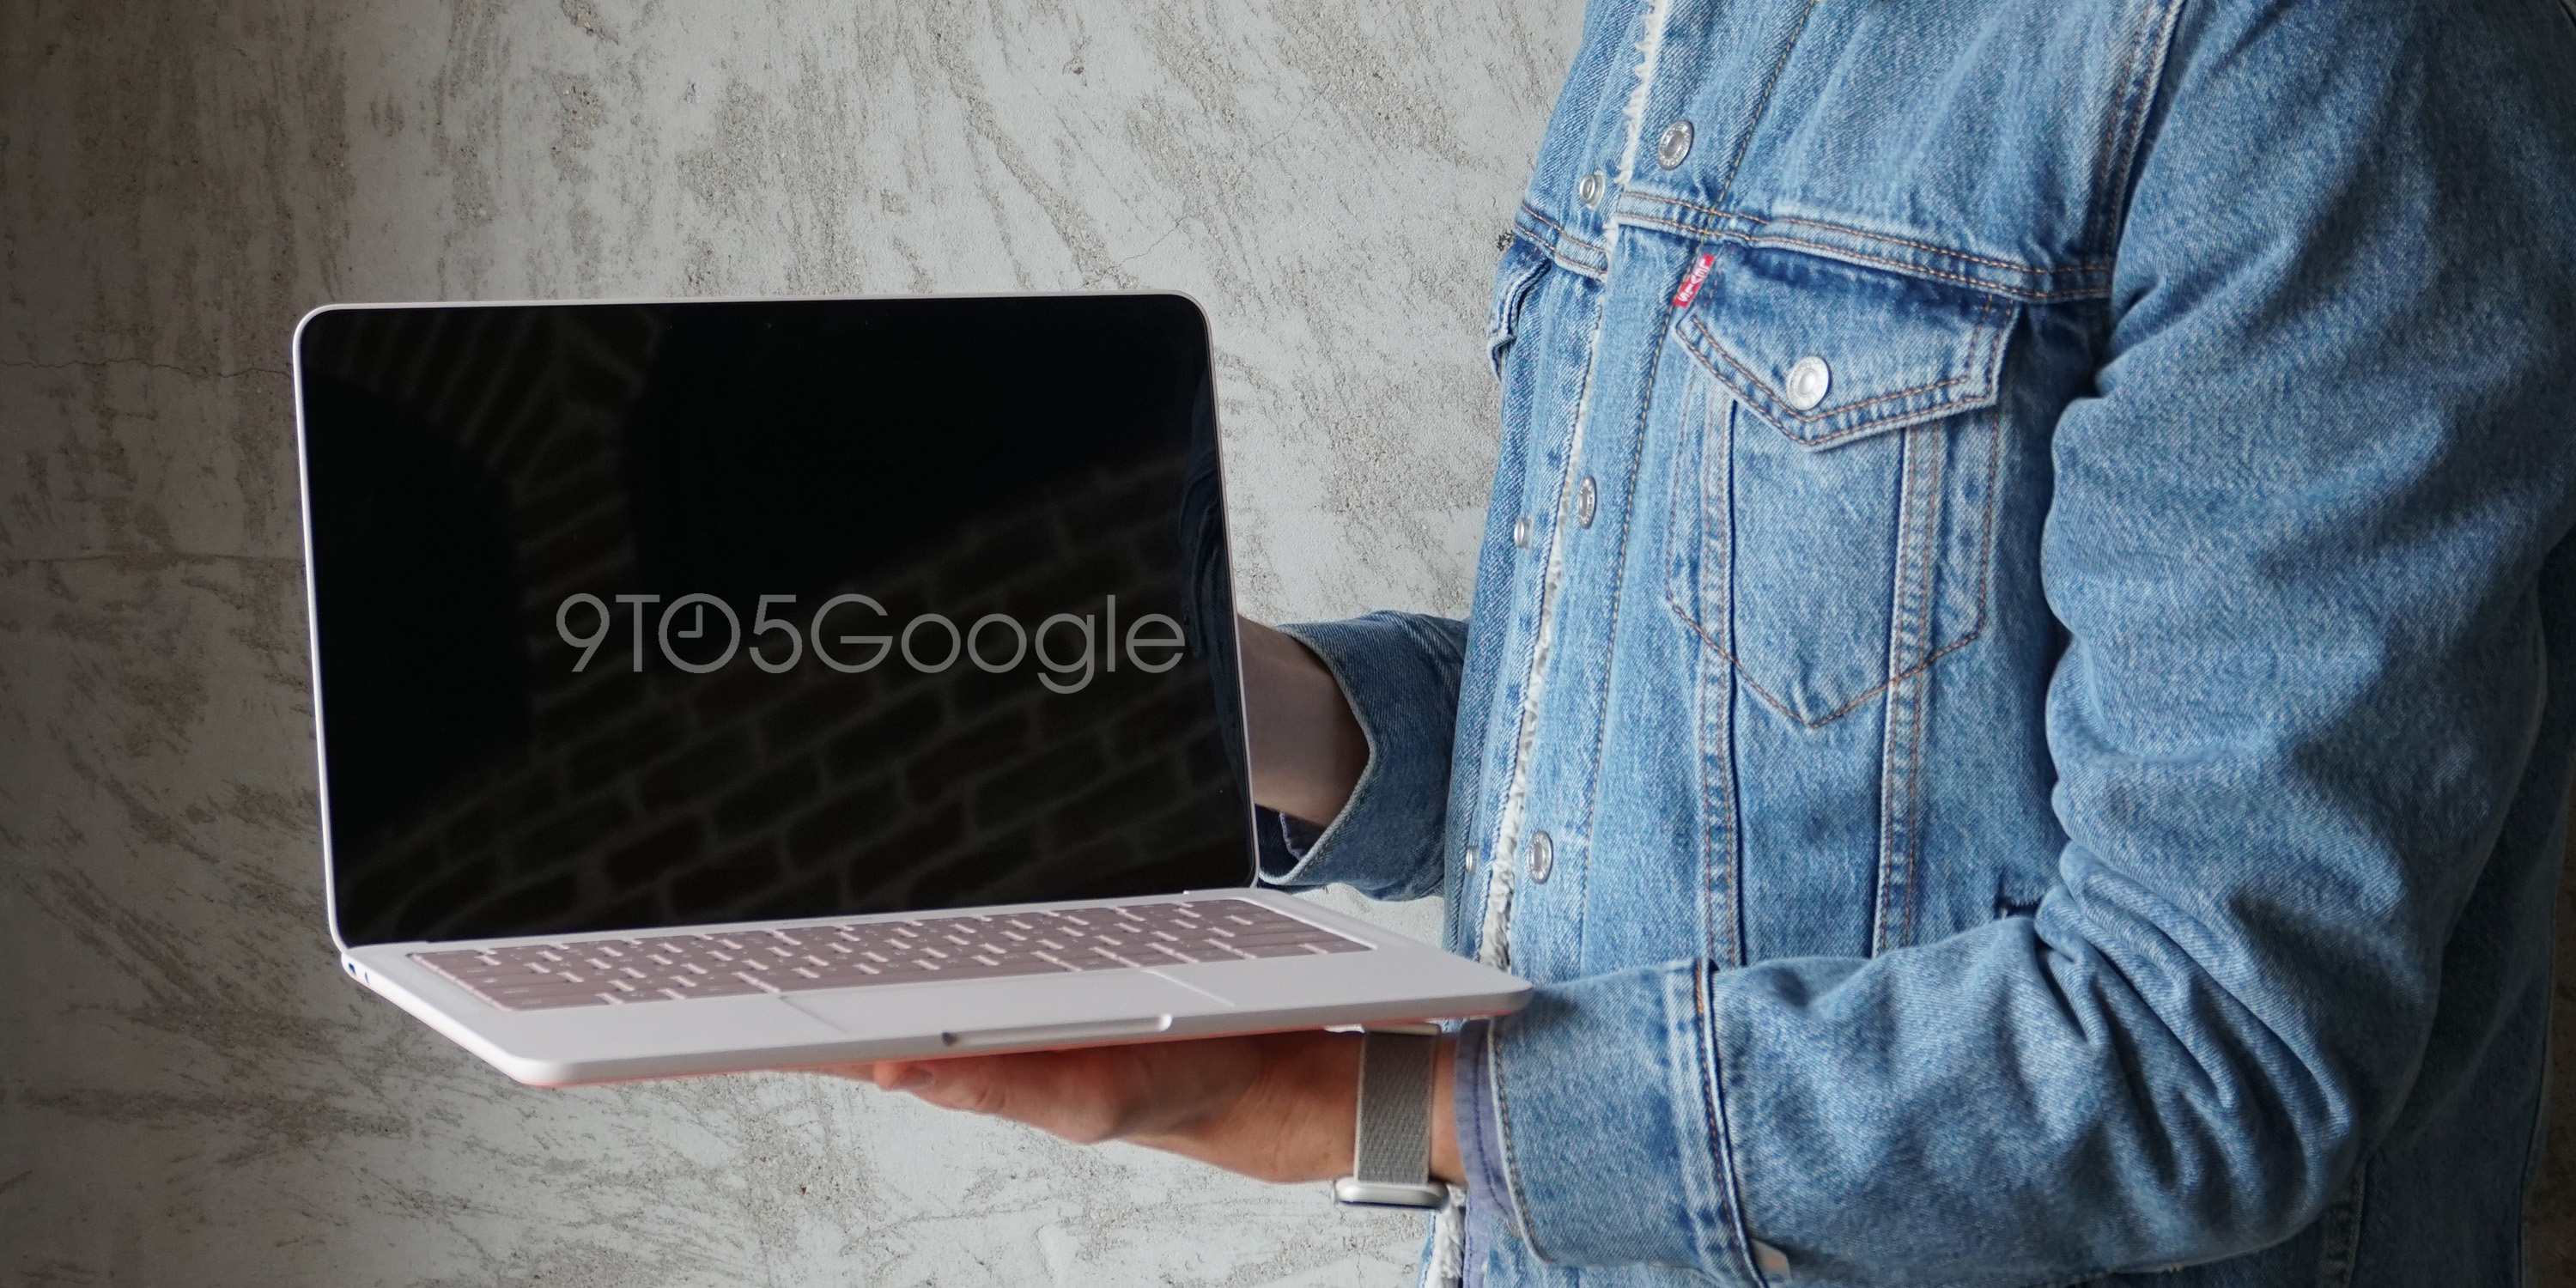 Deska do prania - nowy trend: Google przygotowuje laptopa Pixelbook Go o niecodziennym wyglądzie